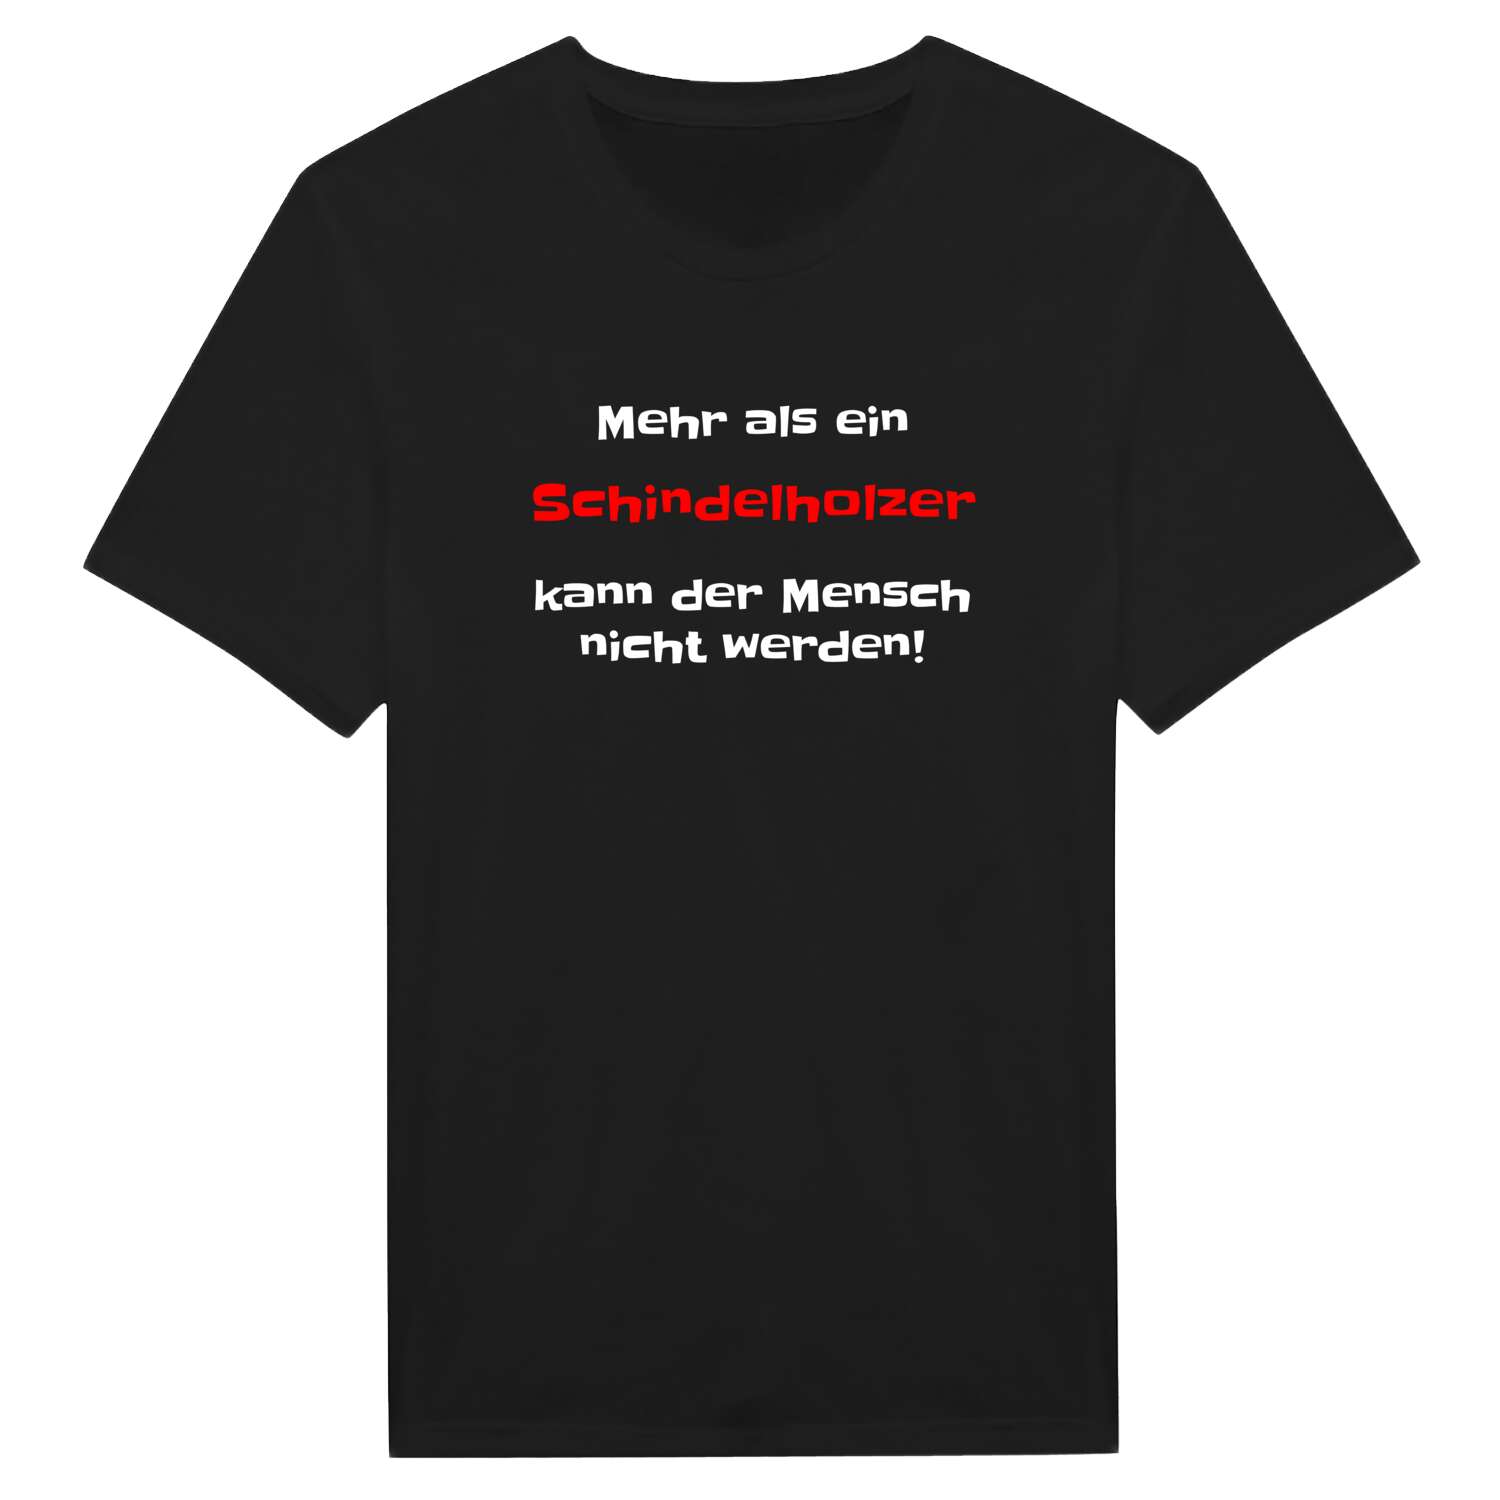 Schindelholz T-Shirt »Mehr als ein«